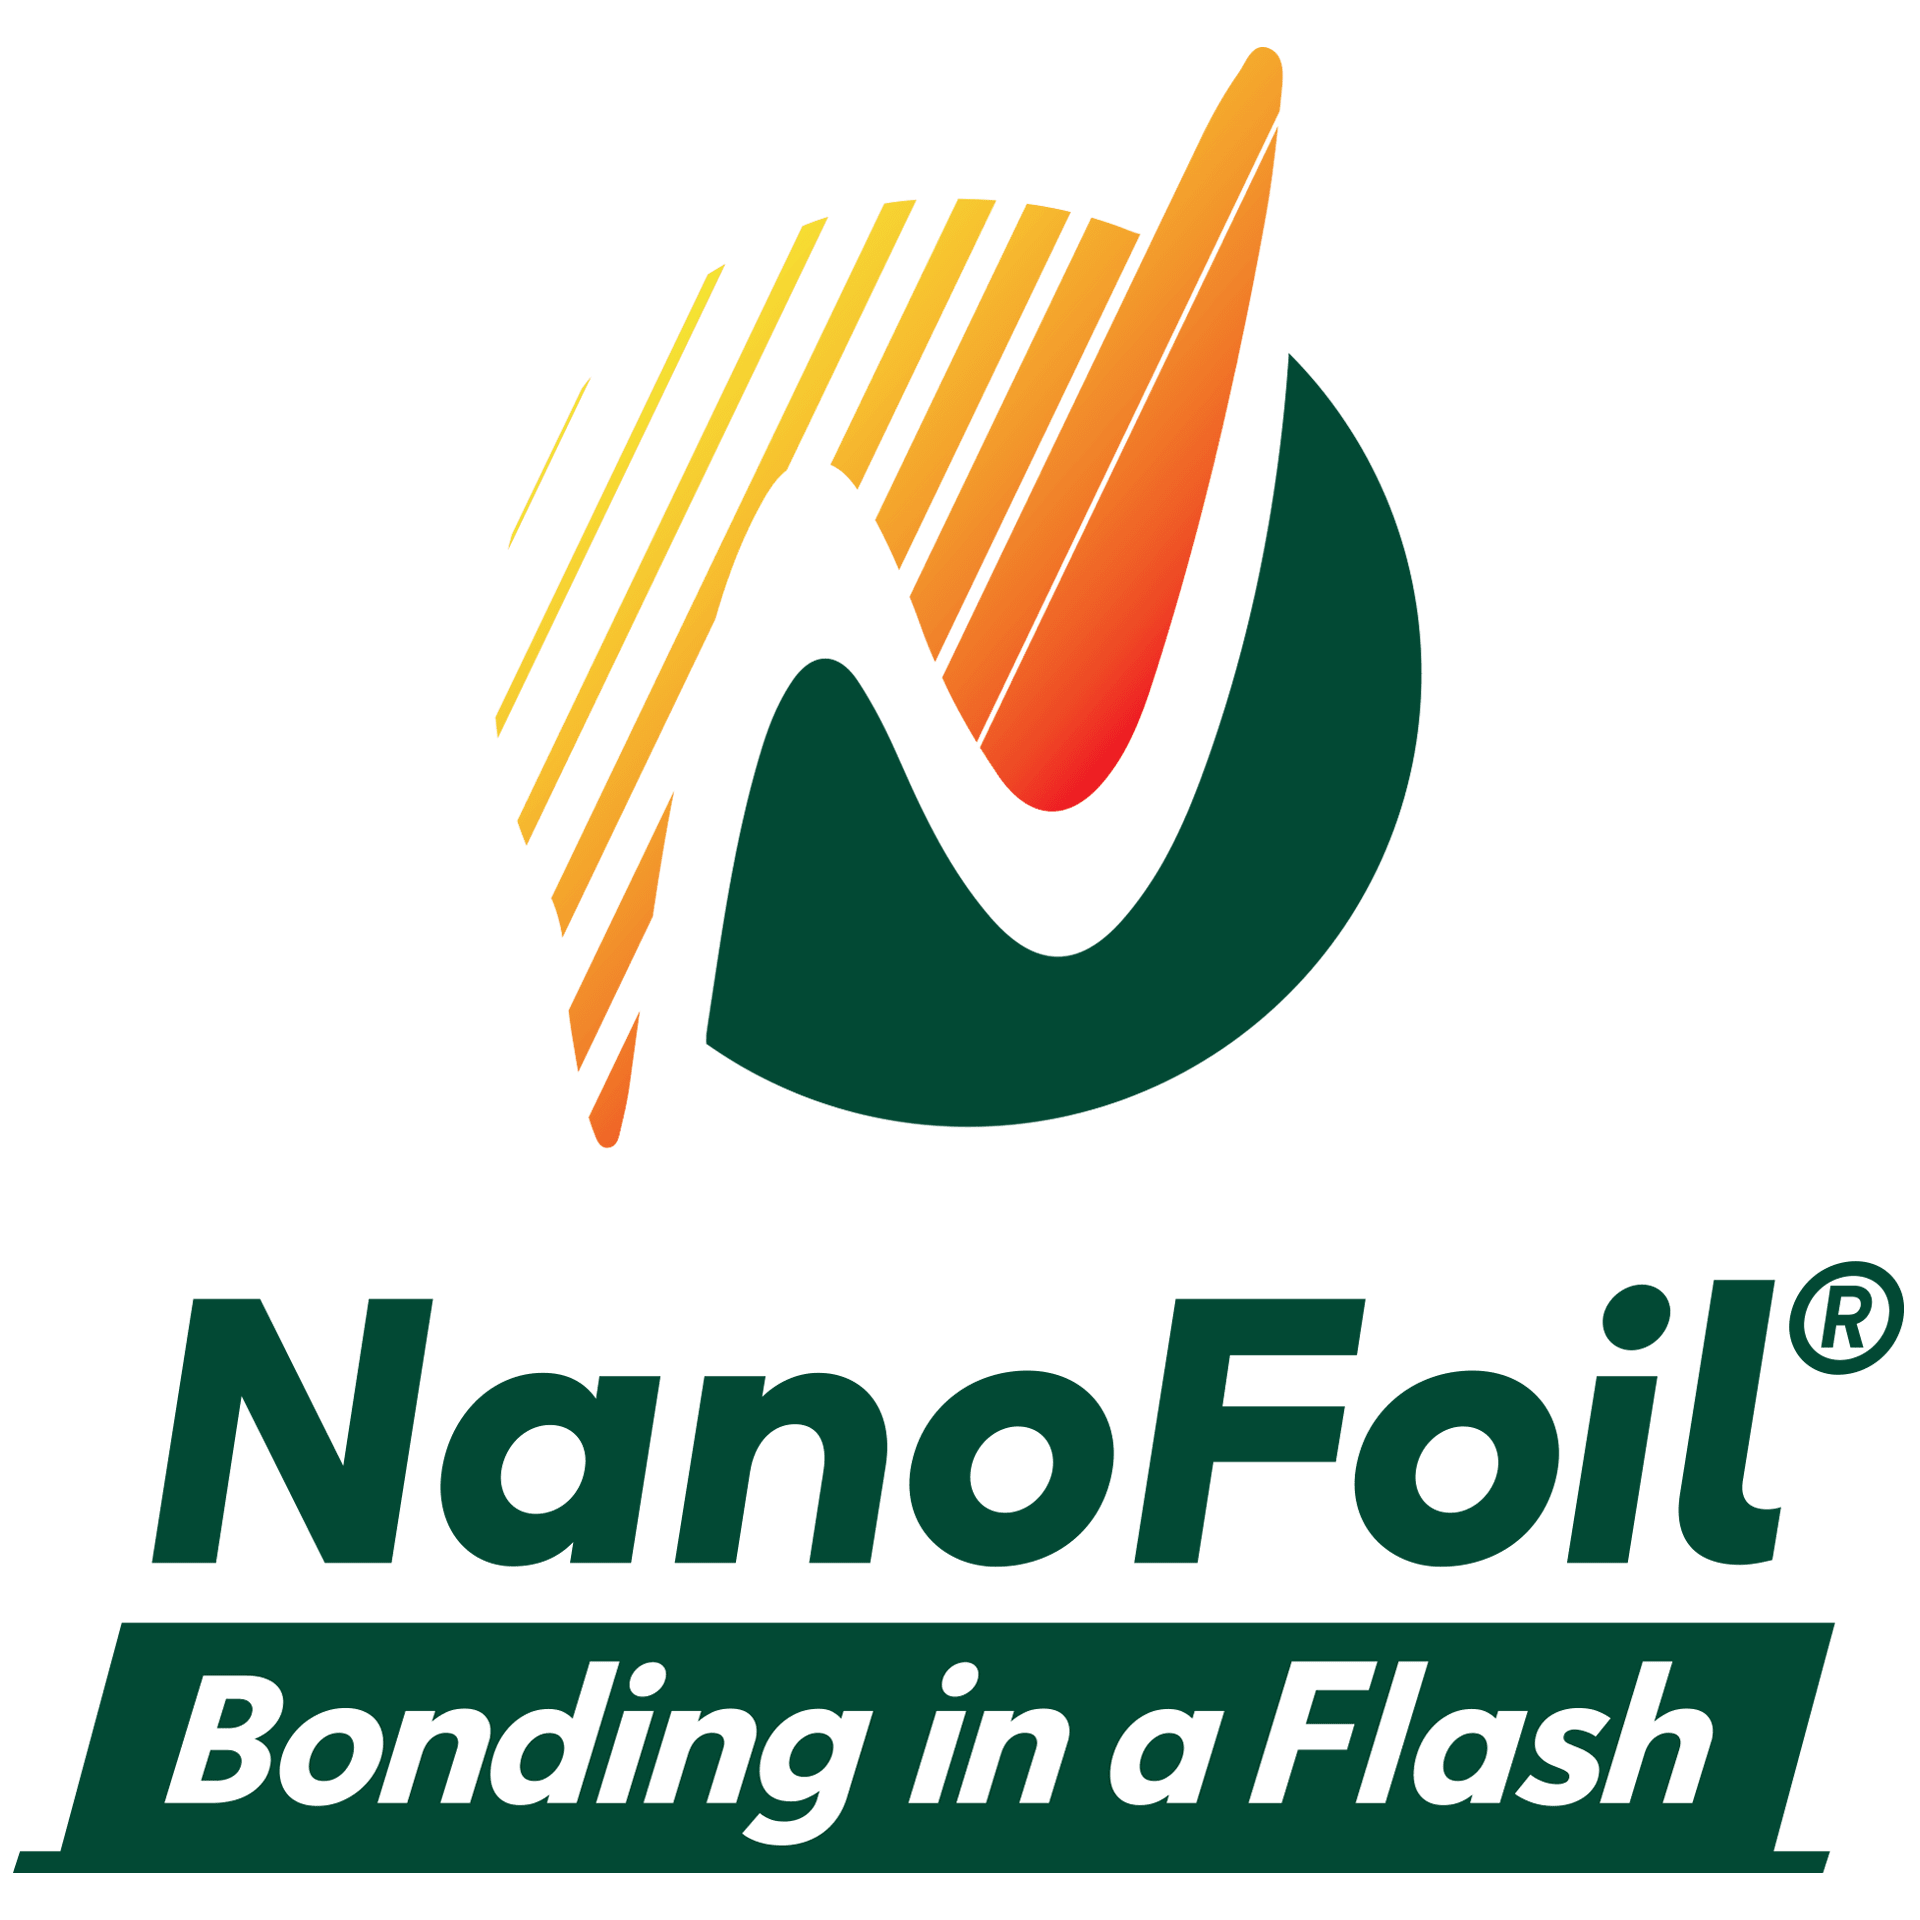 NanoFoil